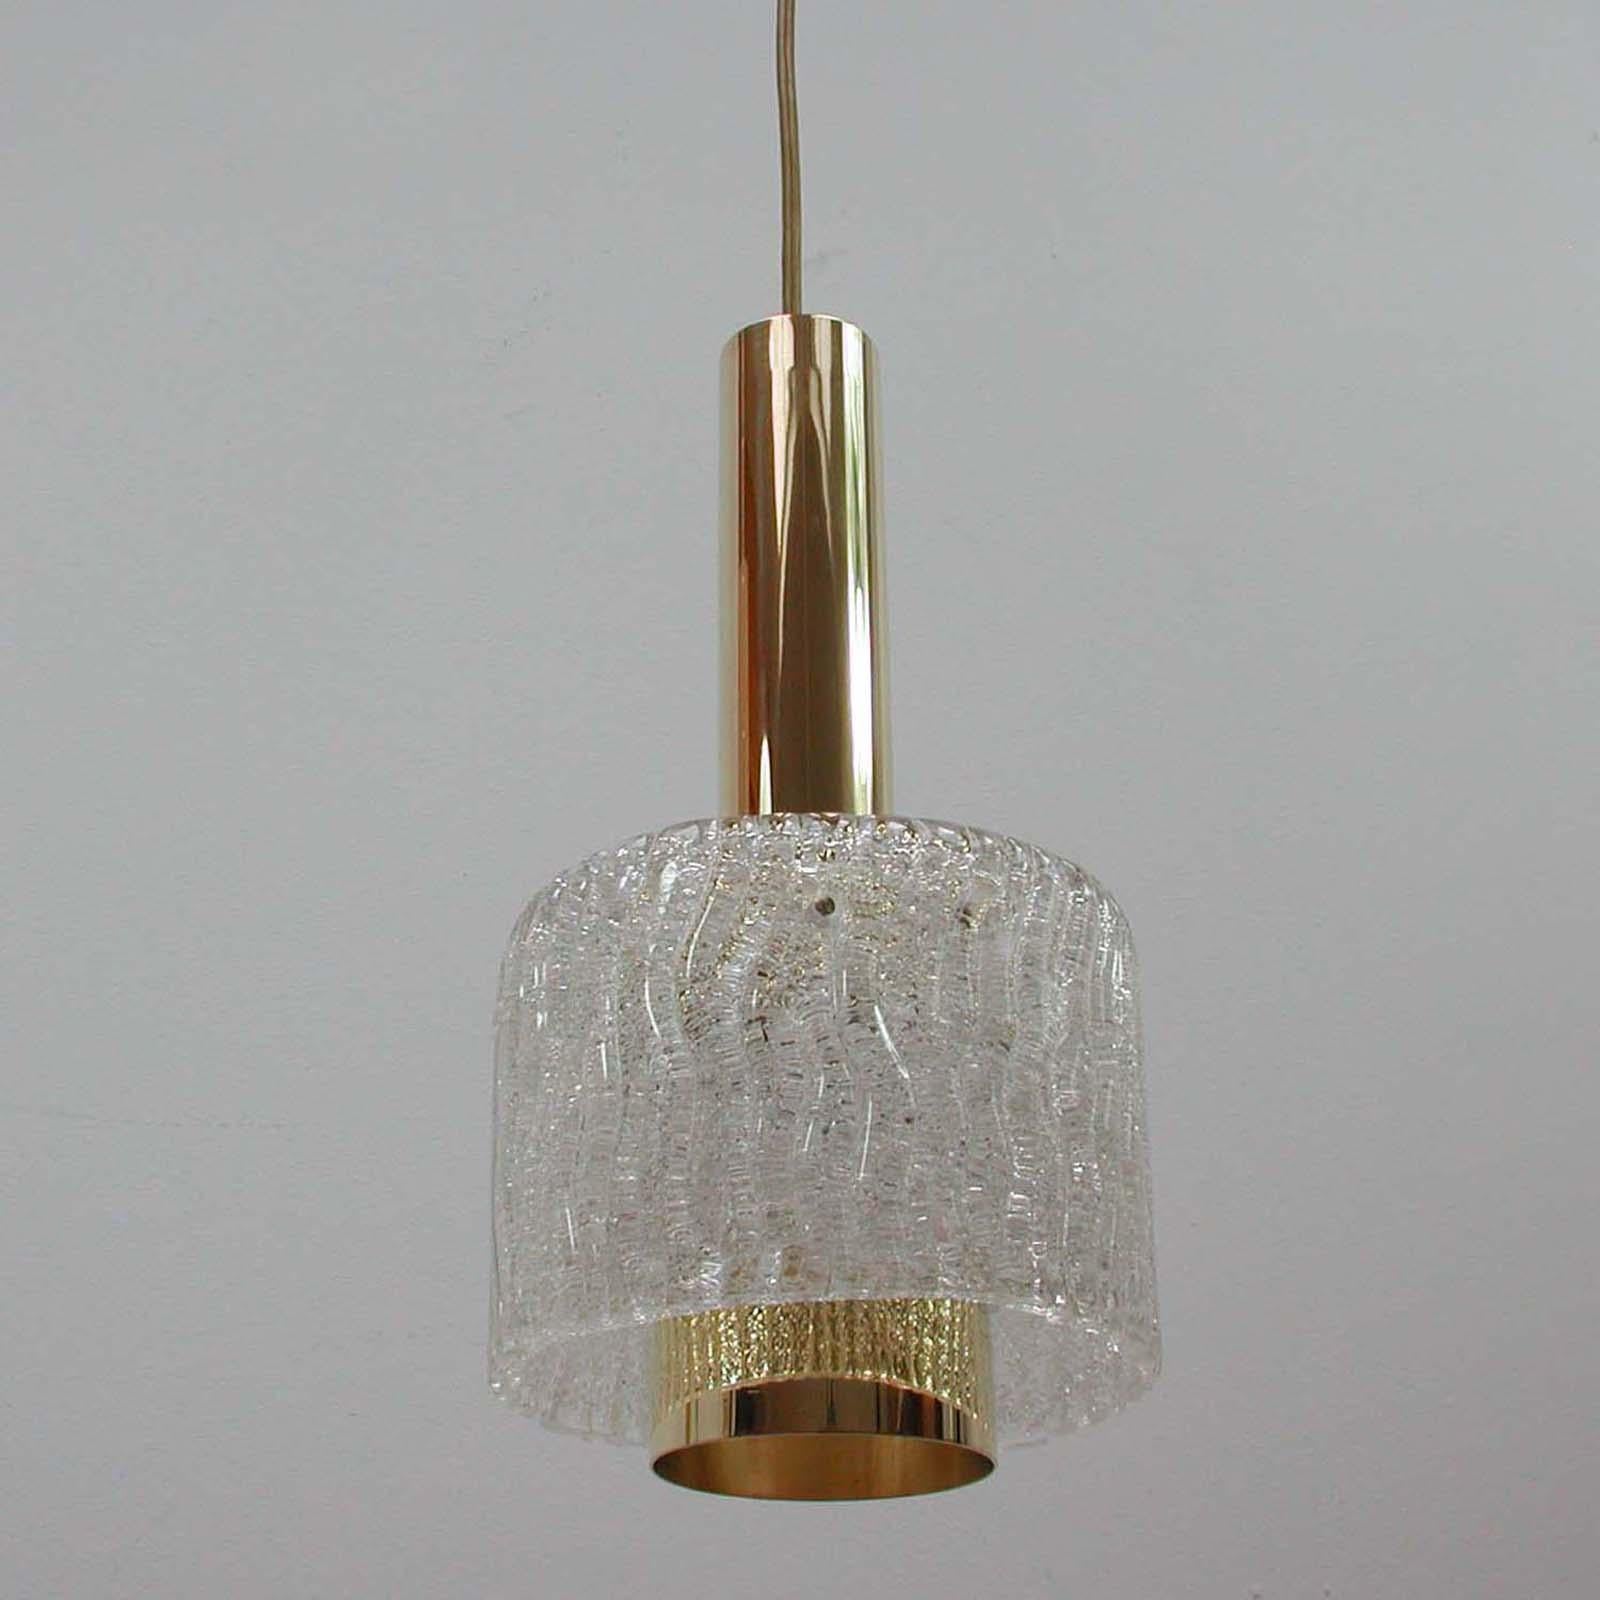 Diese schöne Pendelleuchte aus der Jahrhundertmitte wurde in den 1950er Jahren von JT Kalmar in Österreich entworfen und hergestellt. Sie hat einen Korpus aus Messing und einen Lampenschirm aus strukturiertem Glas. Die Messingteile sind